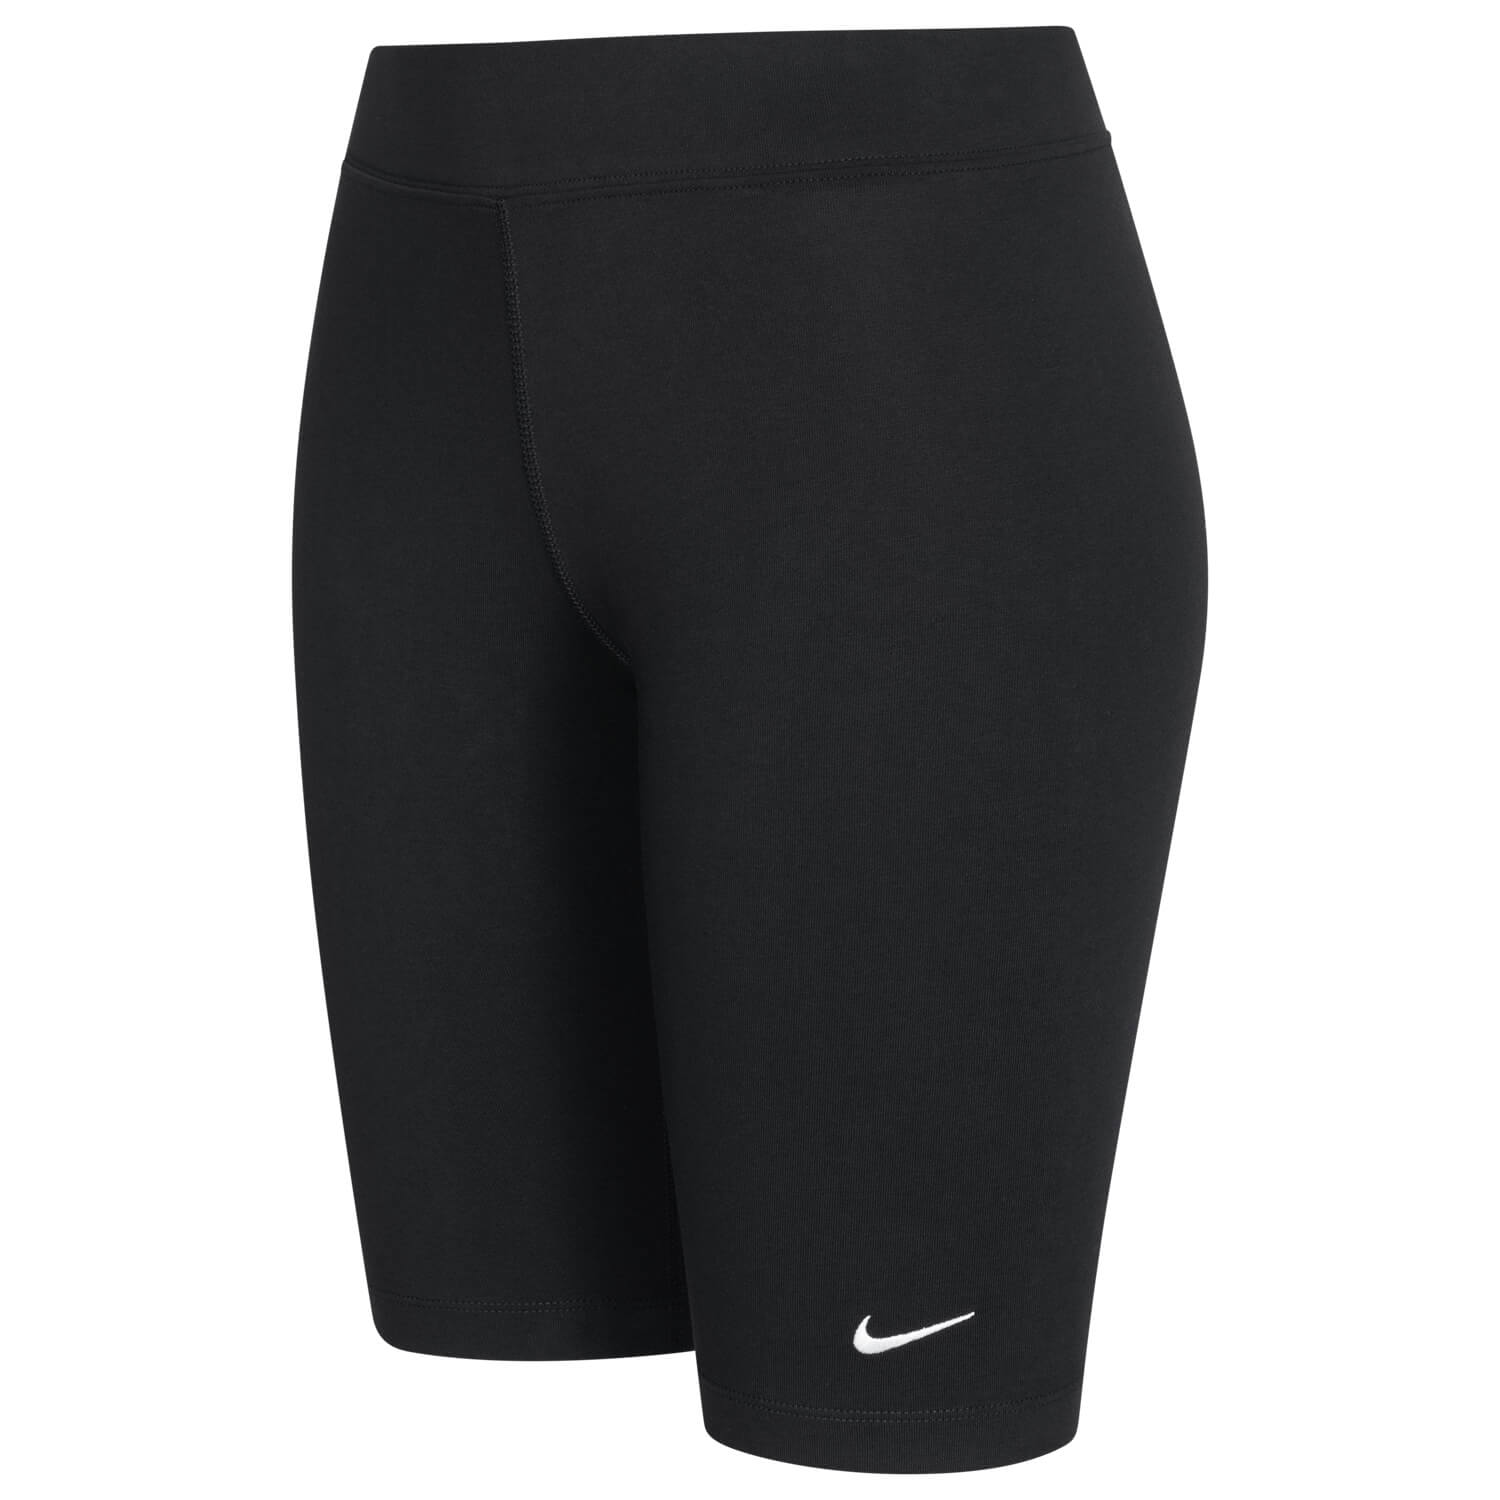 Bild 3: Nike Damen Sport-Shorts Schwarz